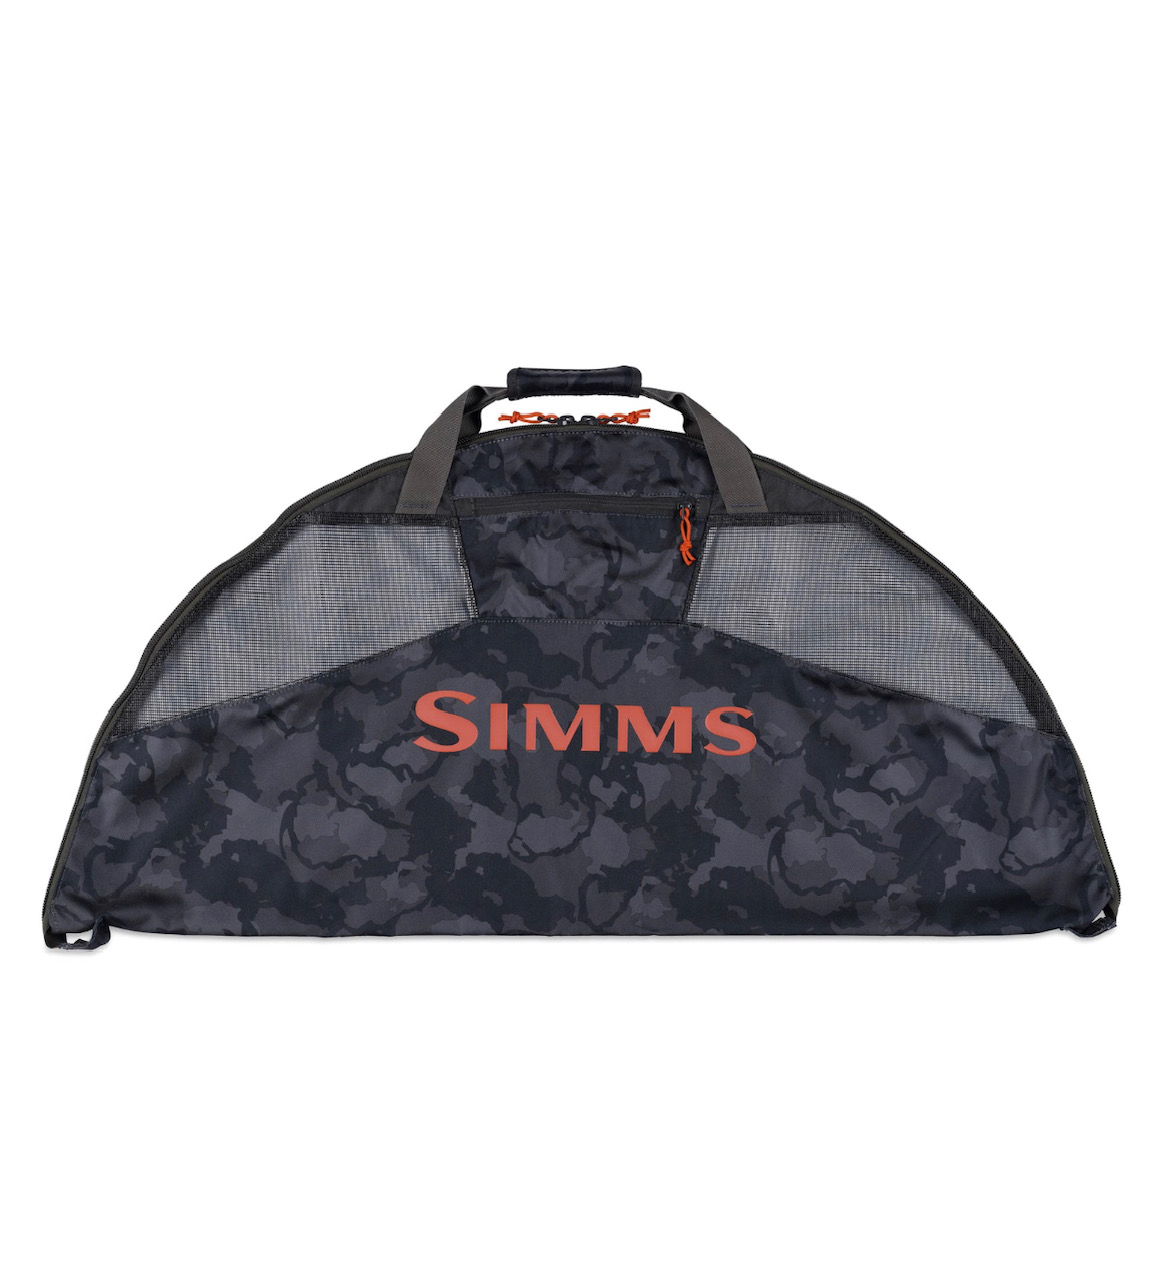 Simms Taco Bag - Regiment Camo Carbon